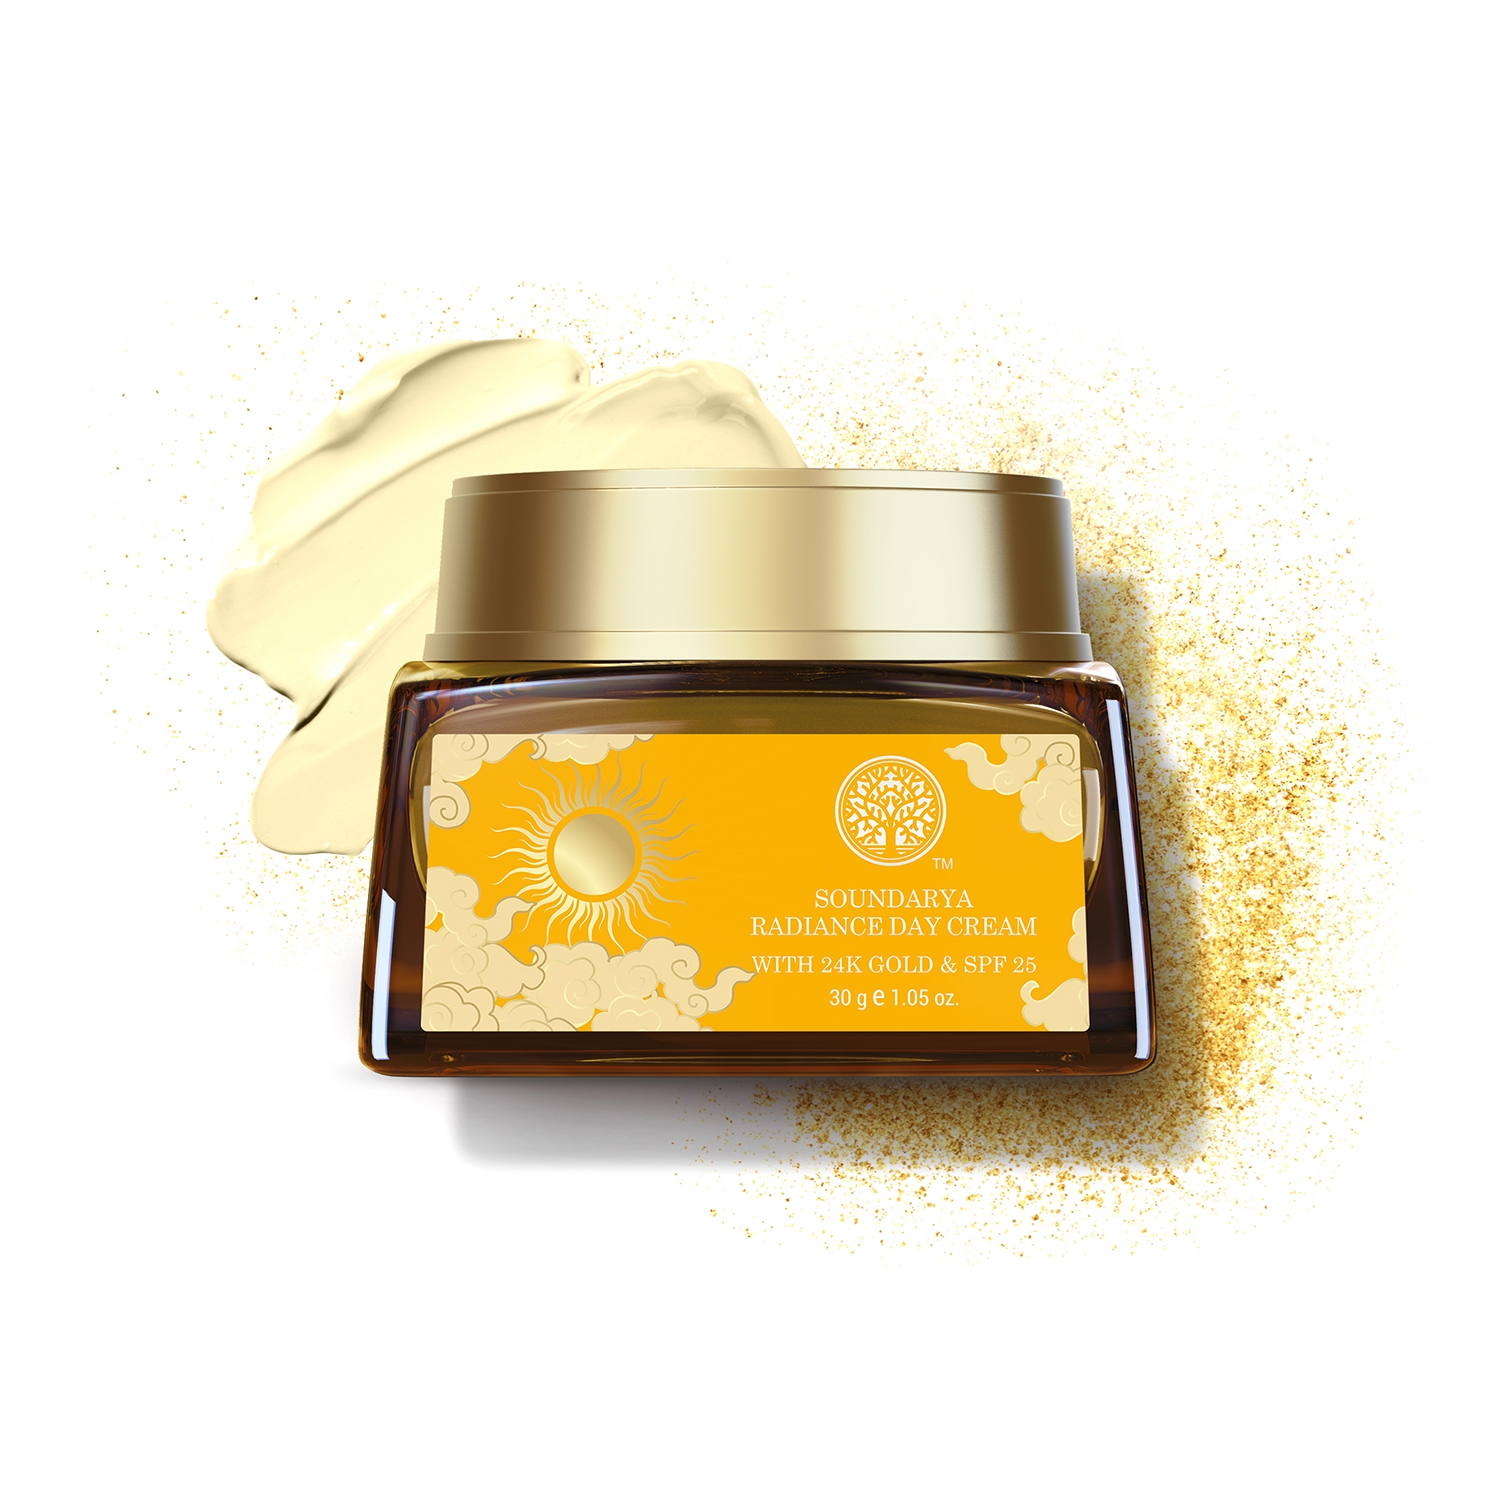 Forest Essentials | Forest Essentials Soundarya Radiance Cream with 24K Gold SPF 25 (30g)